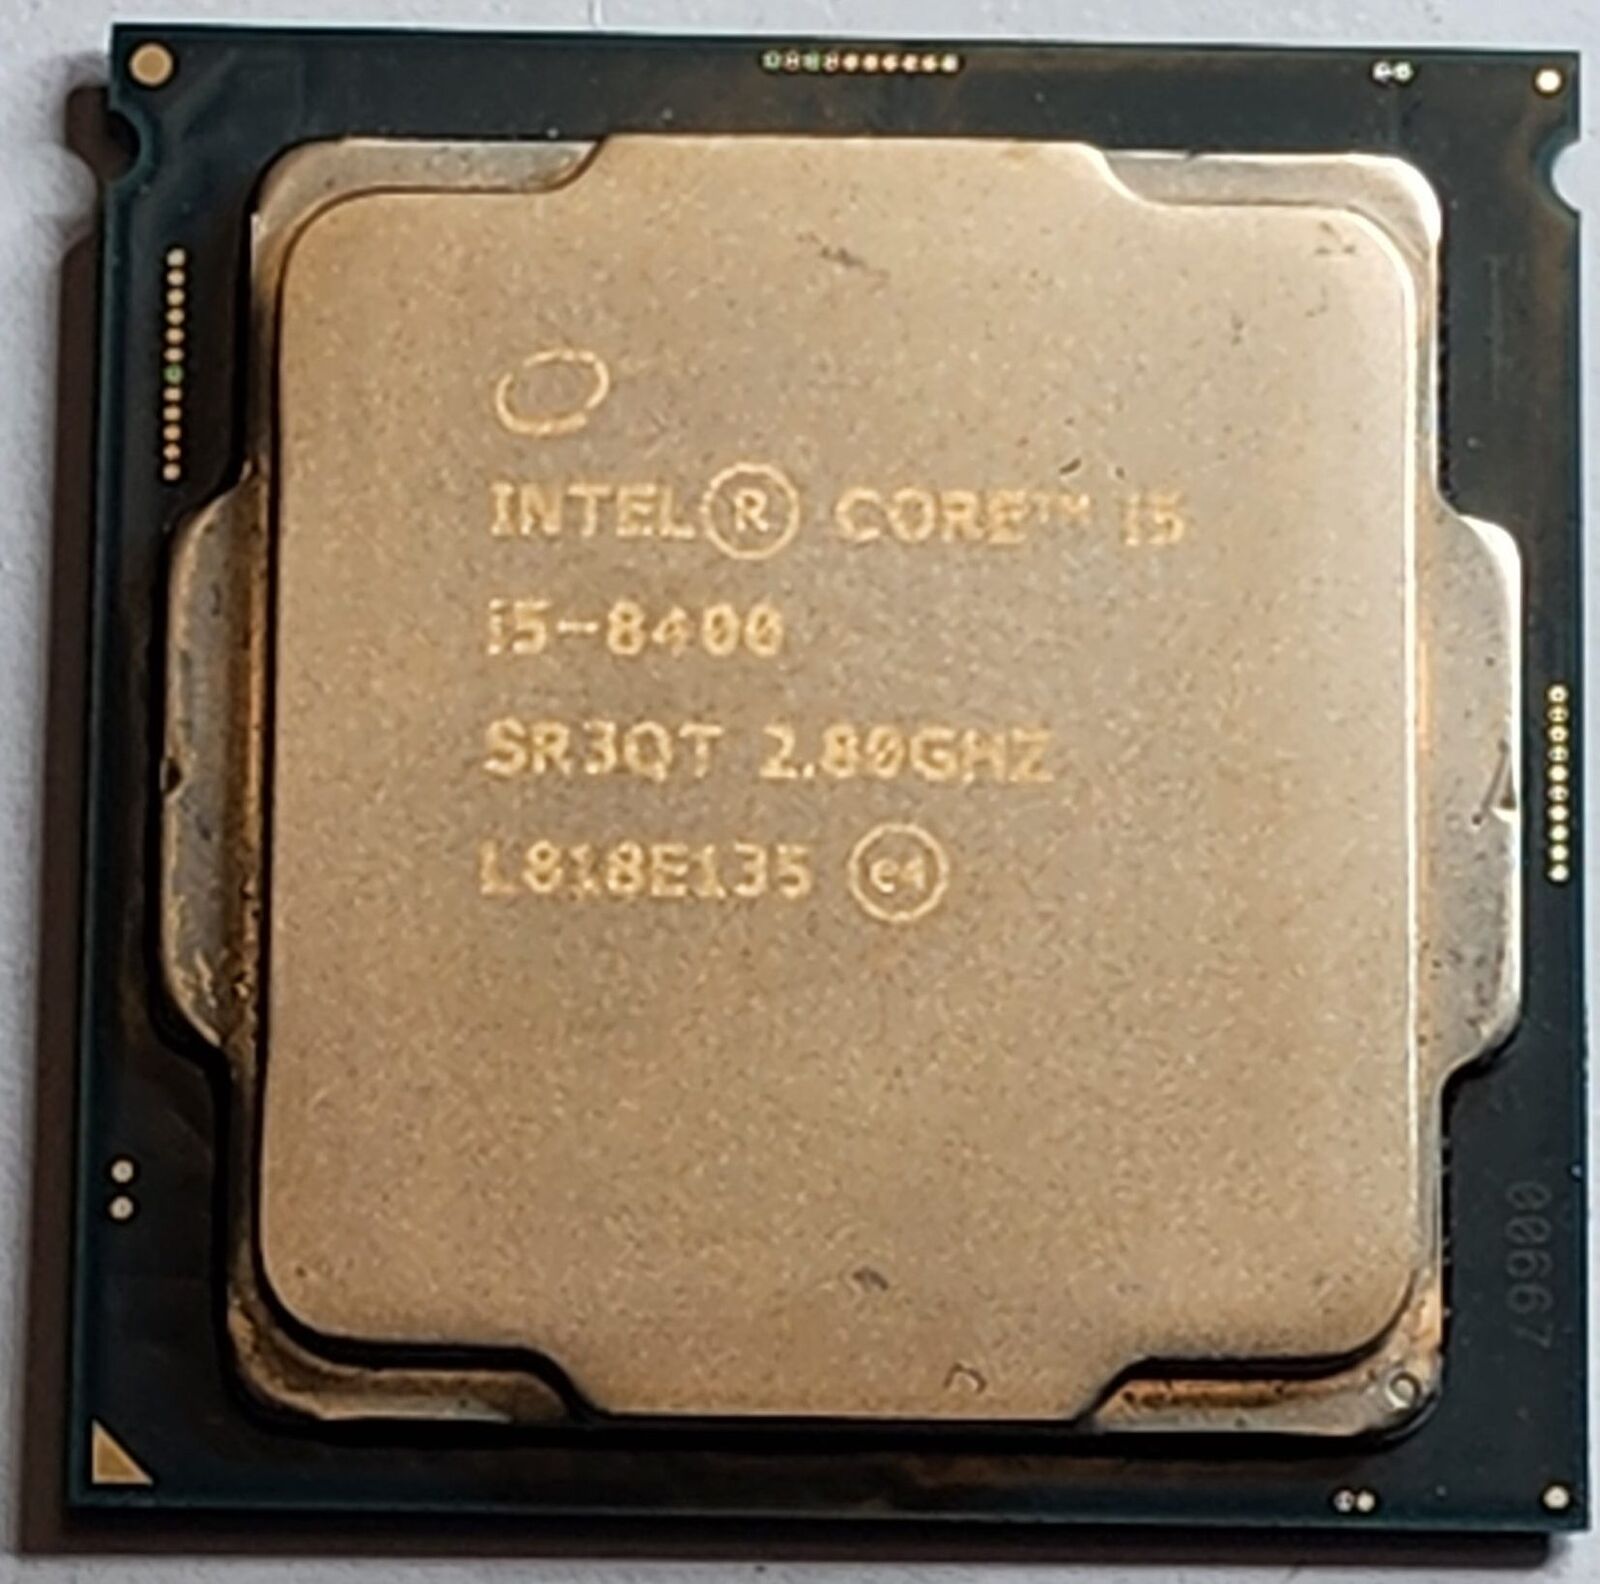 Intel Core i5-8400 SR3QT 2.80GHz Six Core LGA1151 9MB Processor CPU